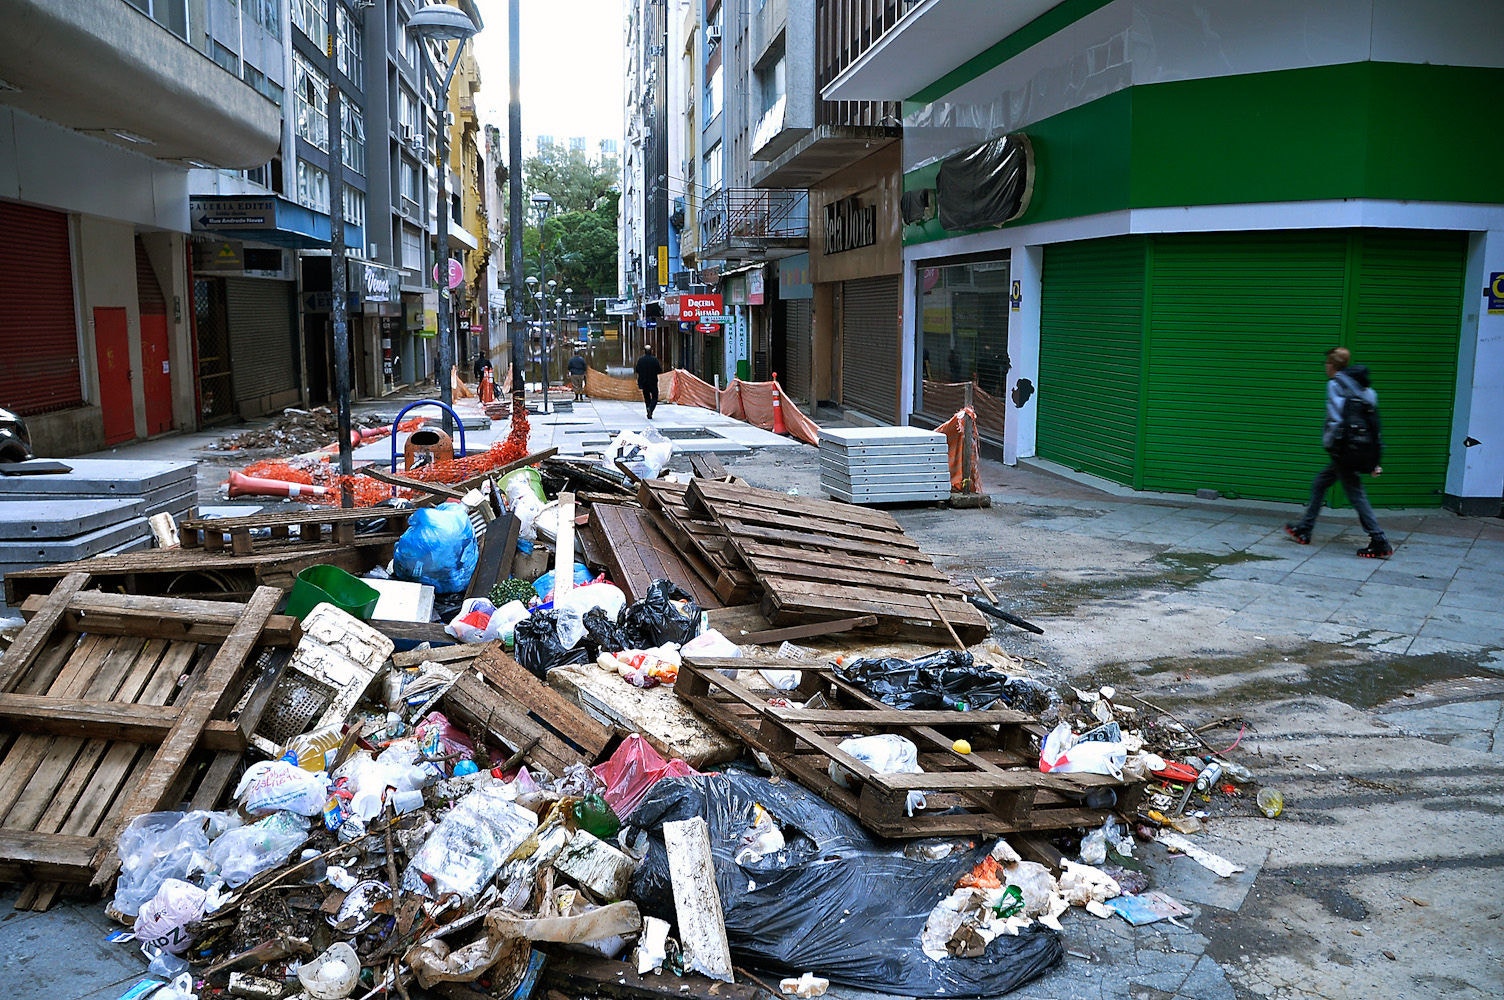 Lixo e sujeira começaram a aparecer em Porto Alegre com a redução das chuvas